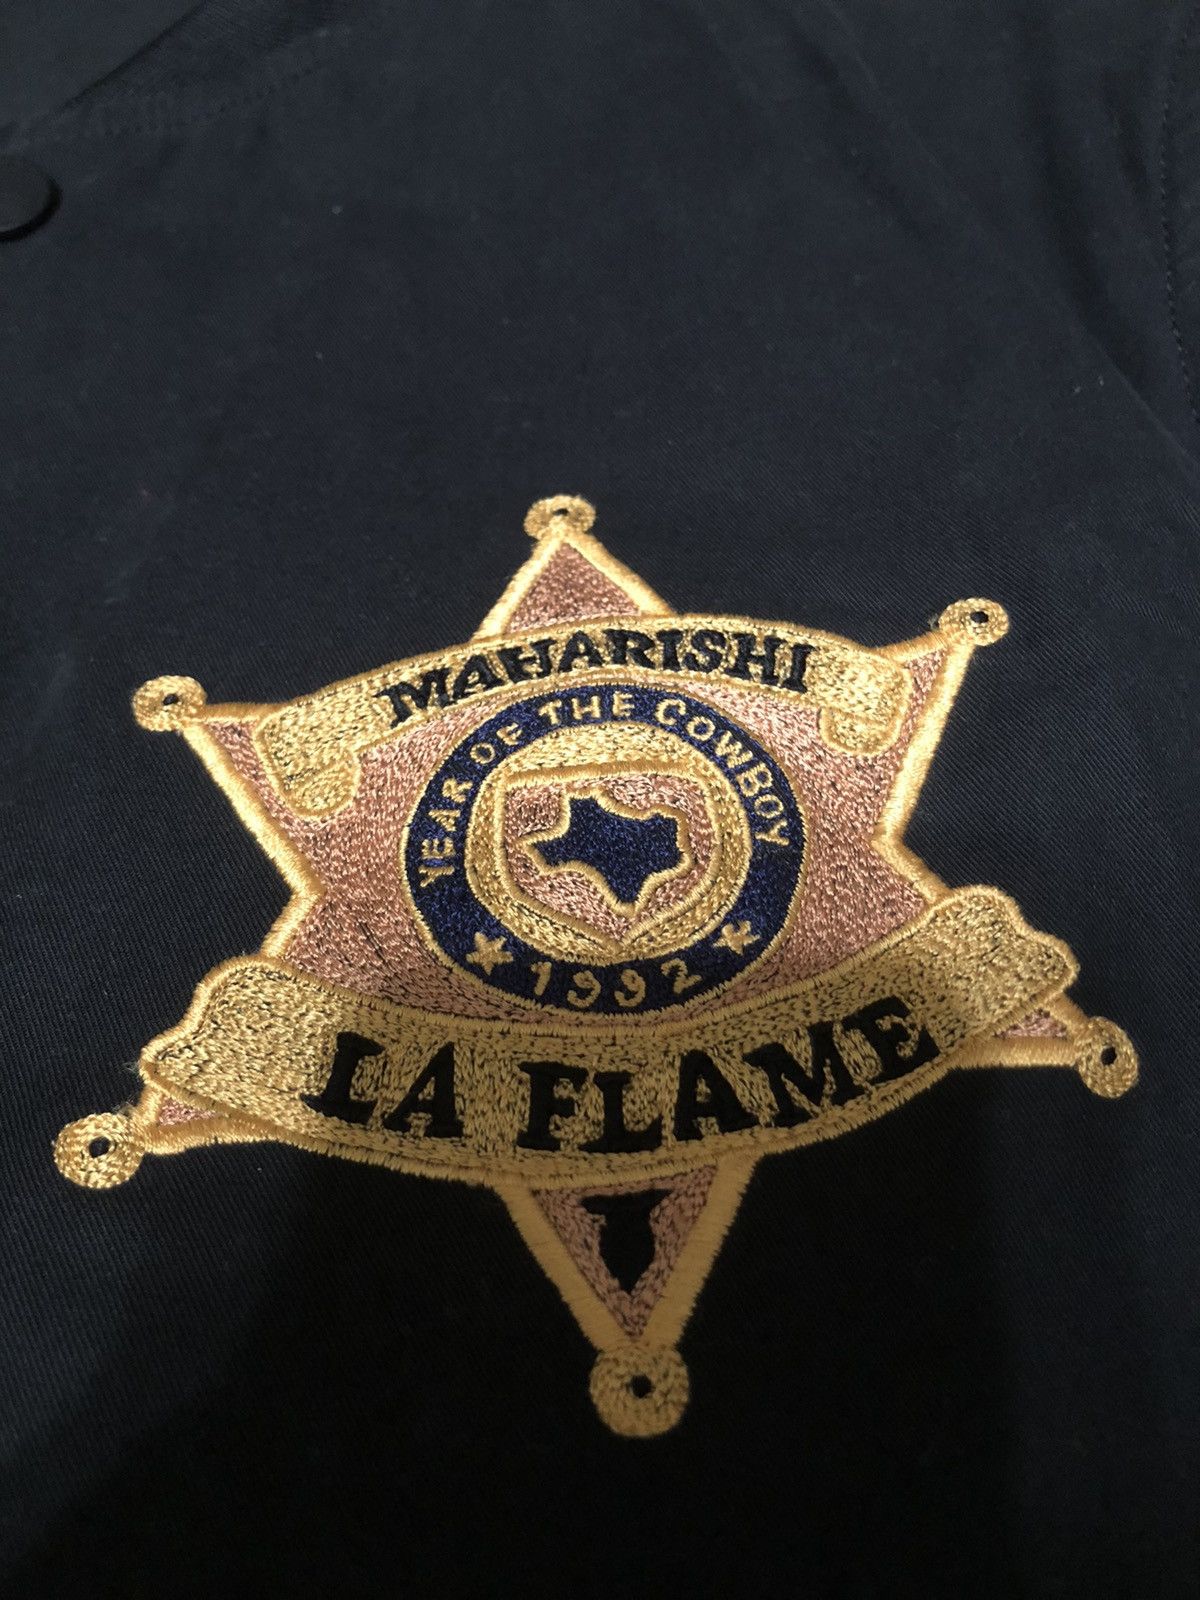 Maharishi Travis Scott x Maharishi La Flame Rodeo Cowboy Jacket Size US S / EU 44-46 / 1 - 8 Thumbnail